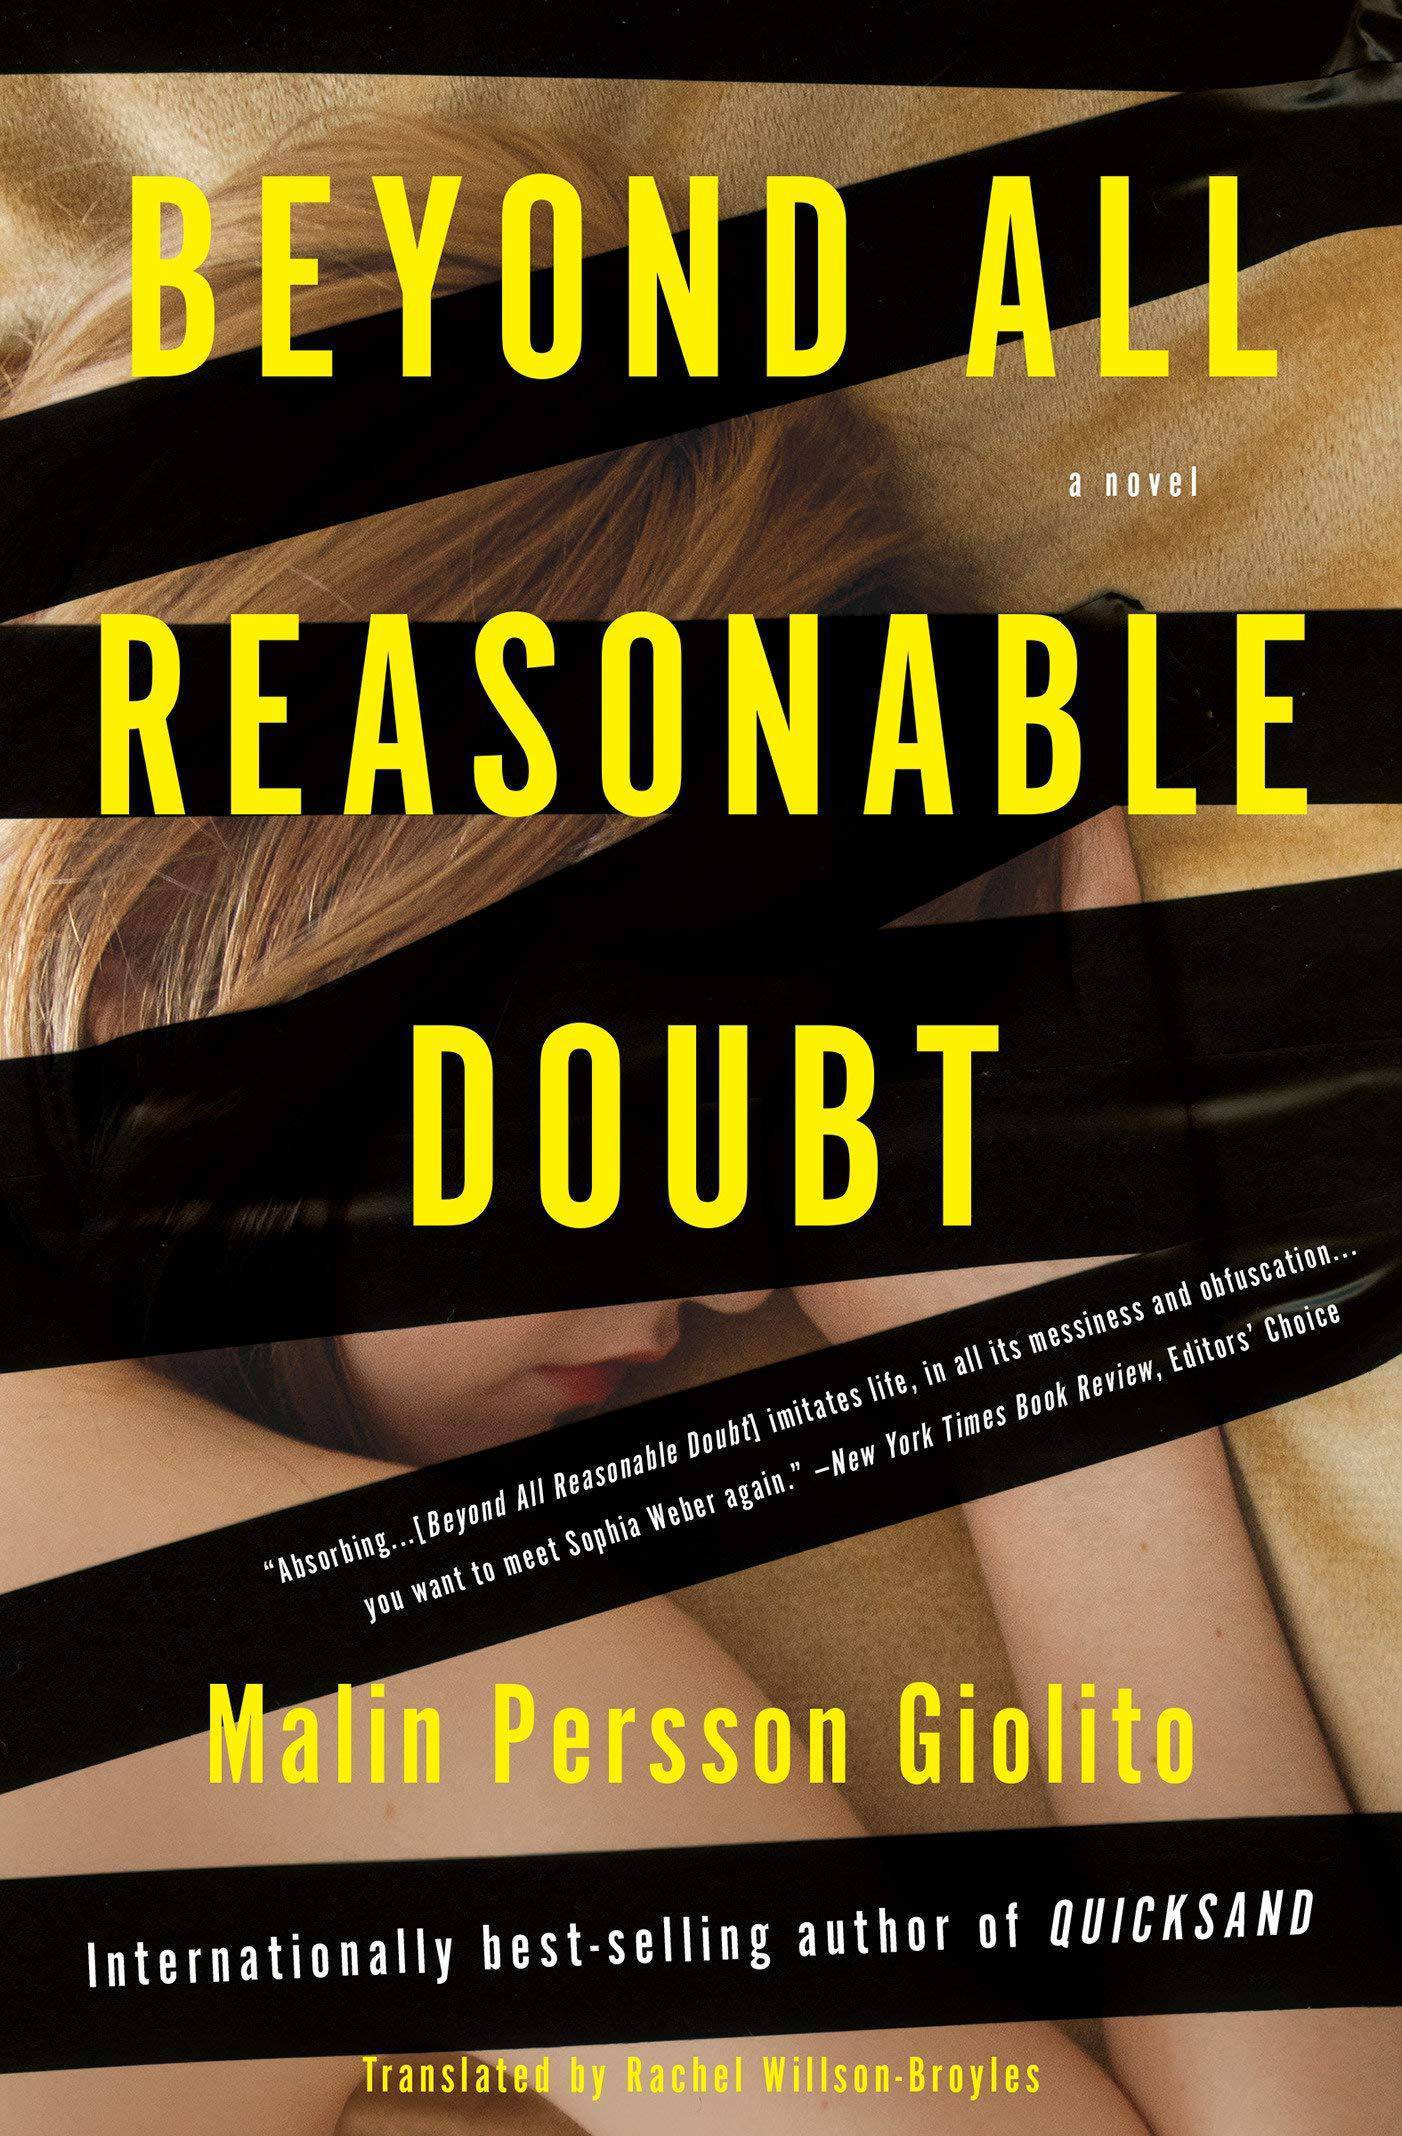 Beyond All Reasonable Doubt - SureShot Books Publishing LLC